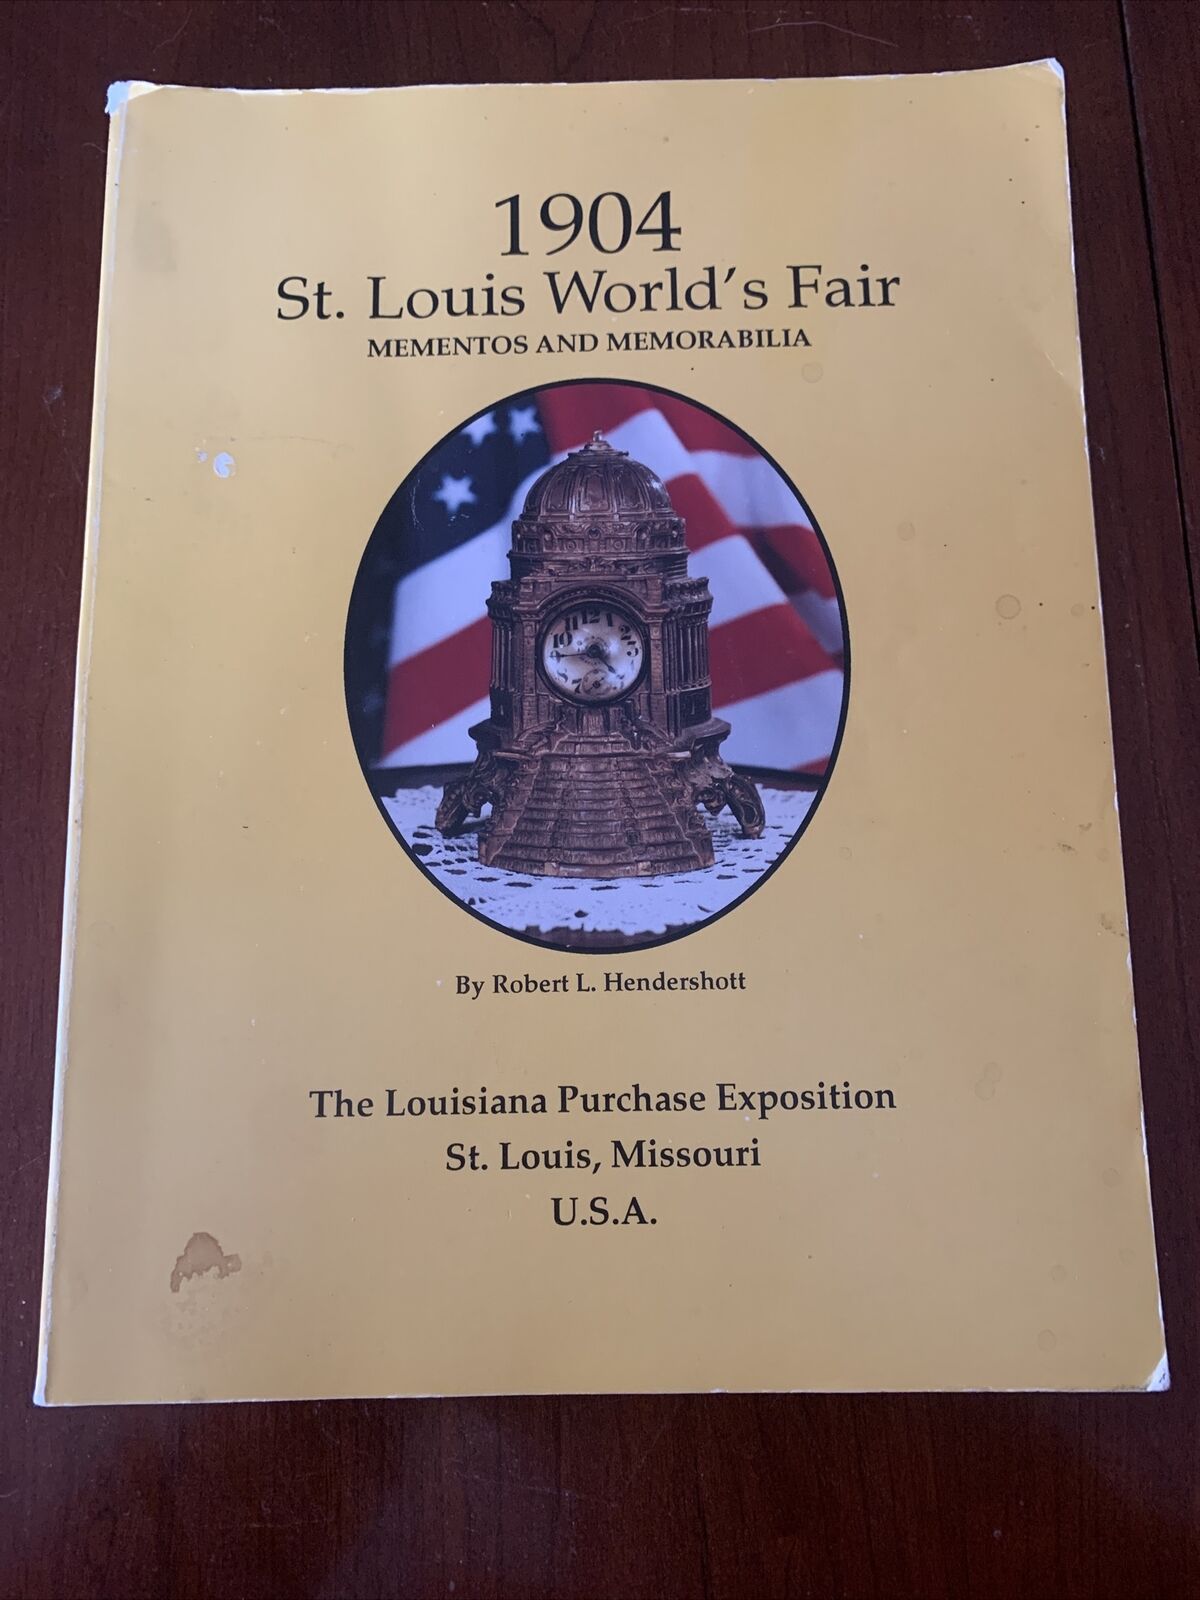 RARE 1904 St. Louis World's Fair Mementos and Memorabilia Robert L. Hendershott